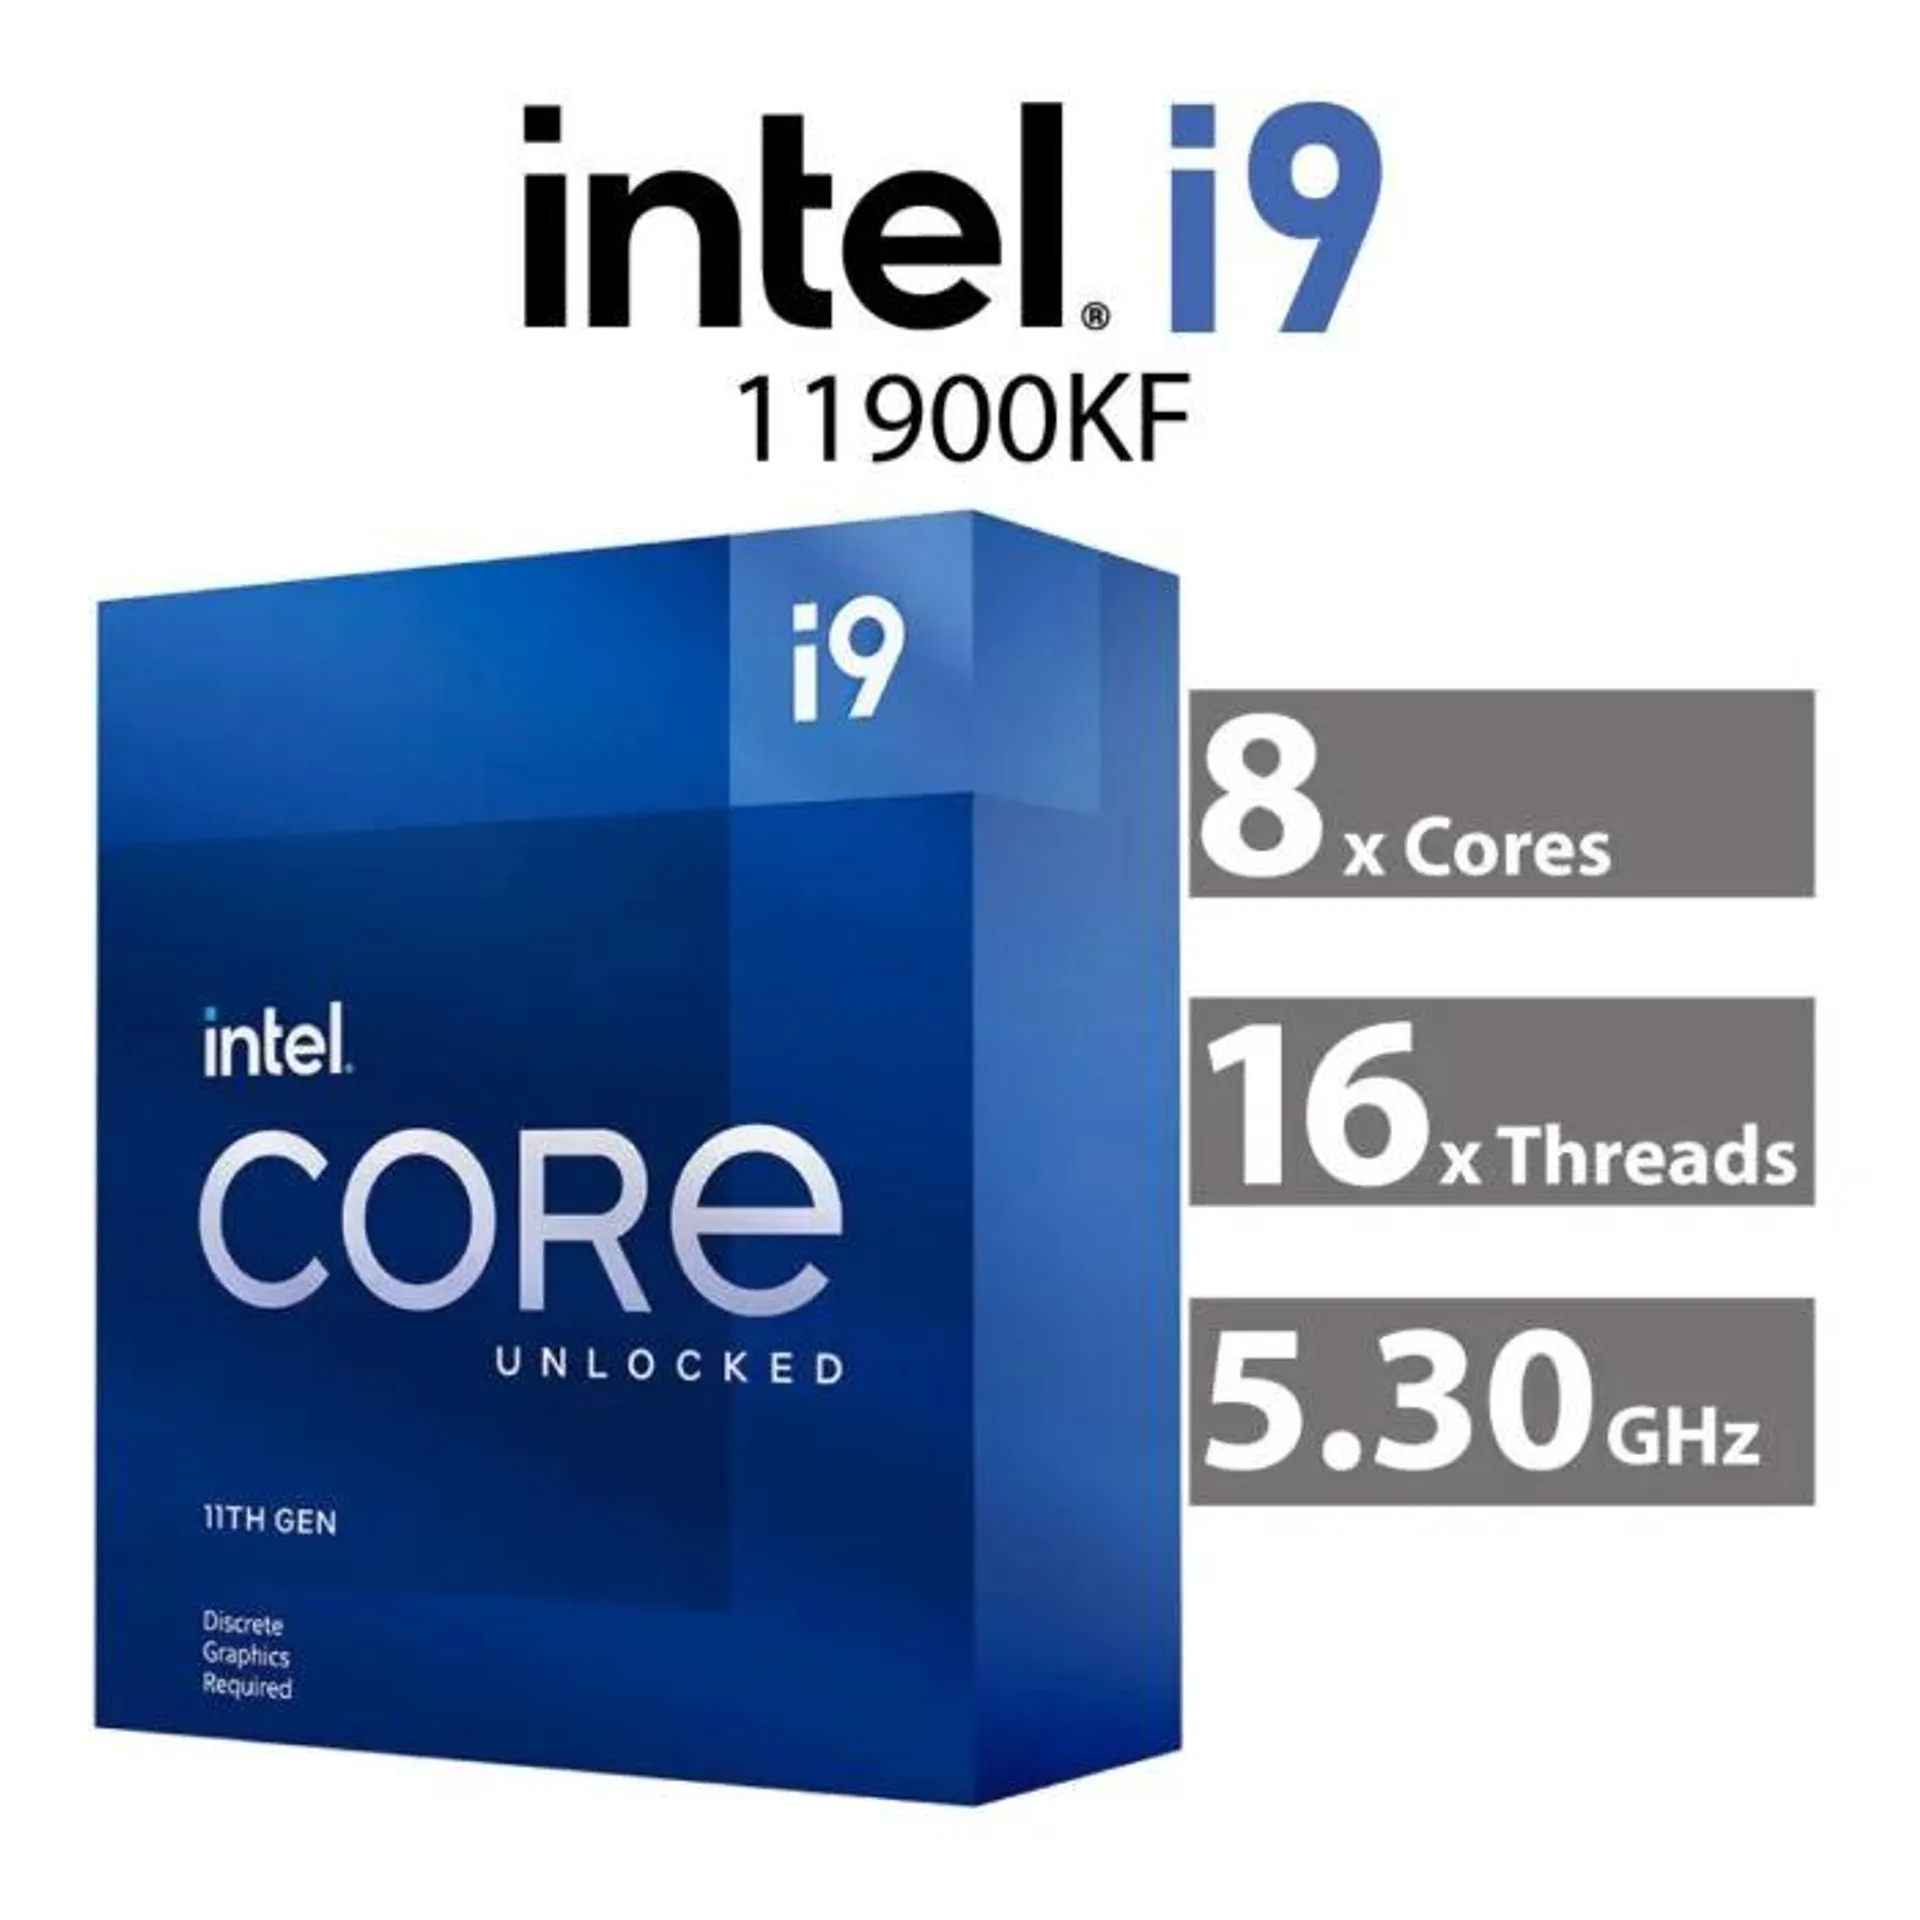 Intel Core i9-11900KF Rocket Lake 8-Core 3.50GHz LGA1200 125W BX8070811900KF Desktop Processor